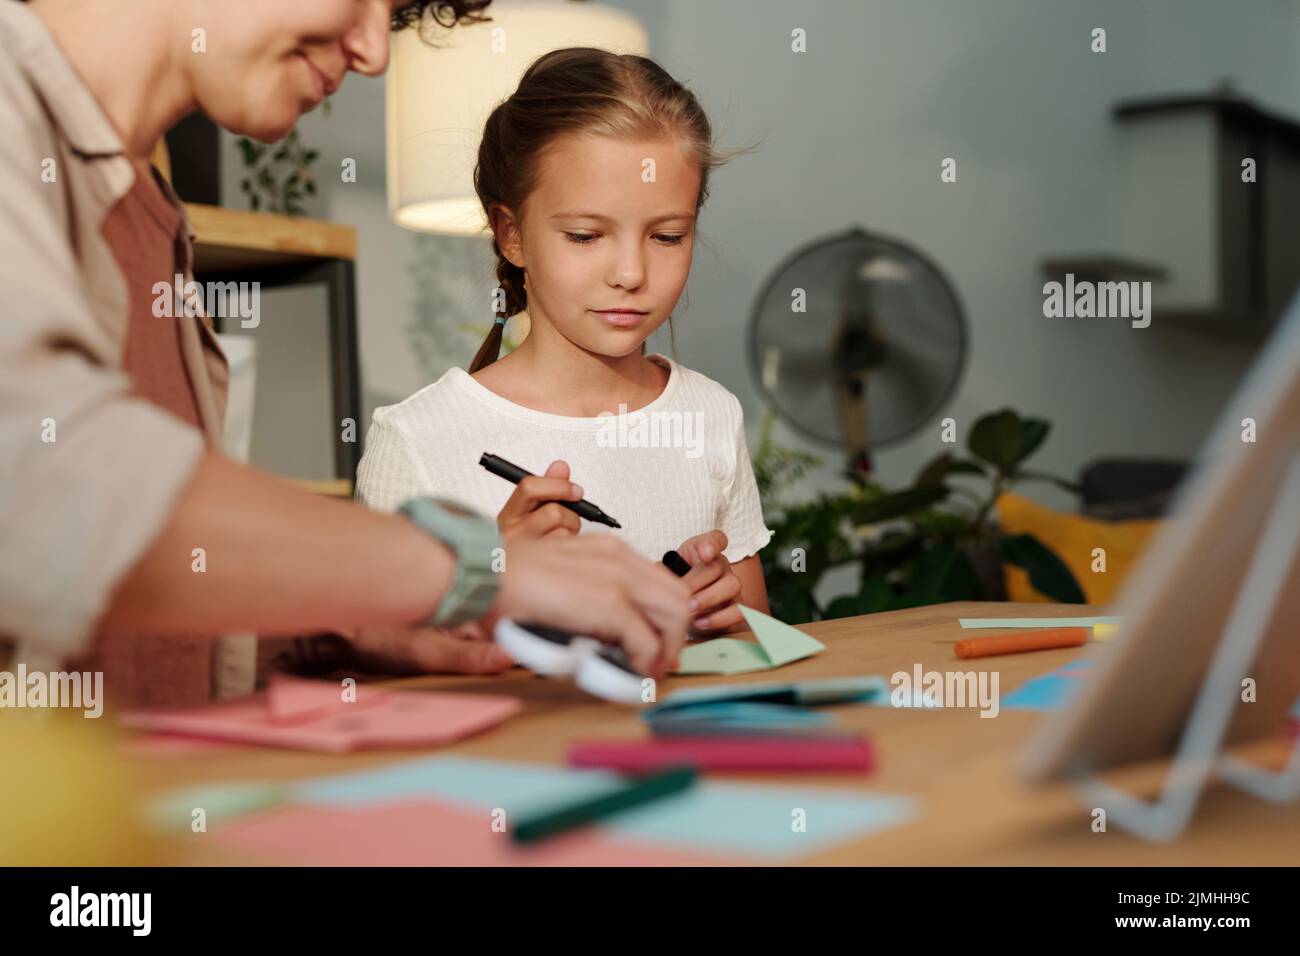 Ragazza carina che guarda la sua carta pieghevole madre mentre crea origami a piacere dopo aver guardato corso online o masterclass Foto Stock